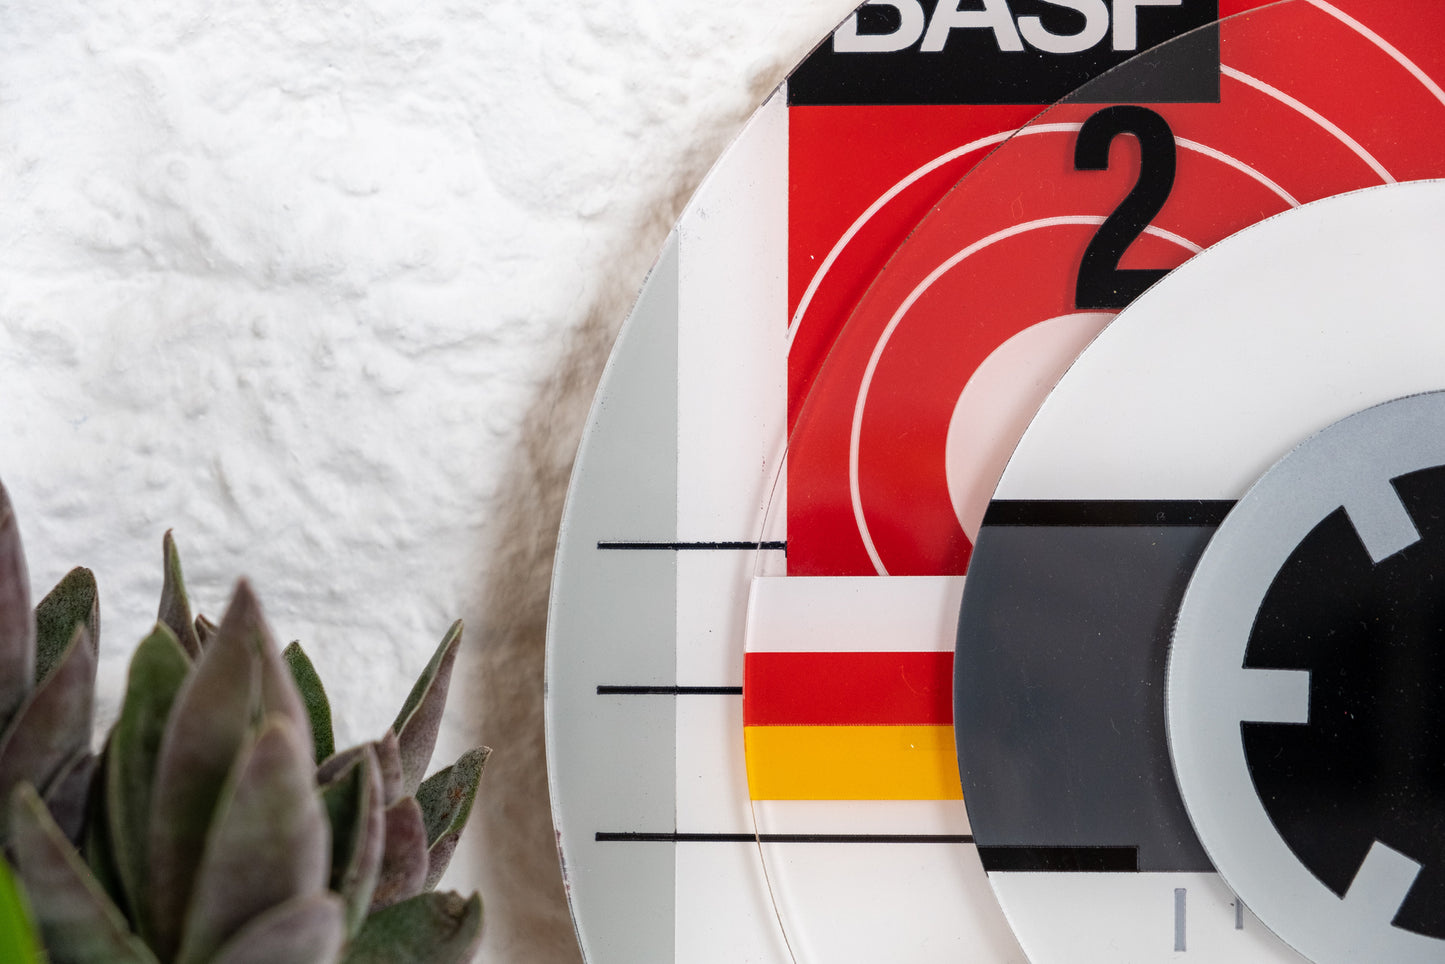 BASF Cassette Roundel